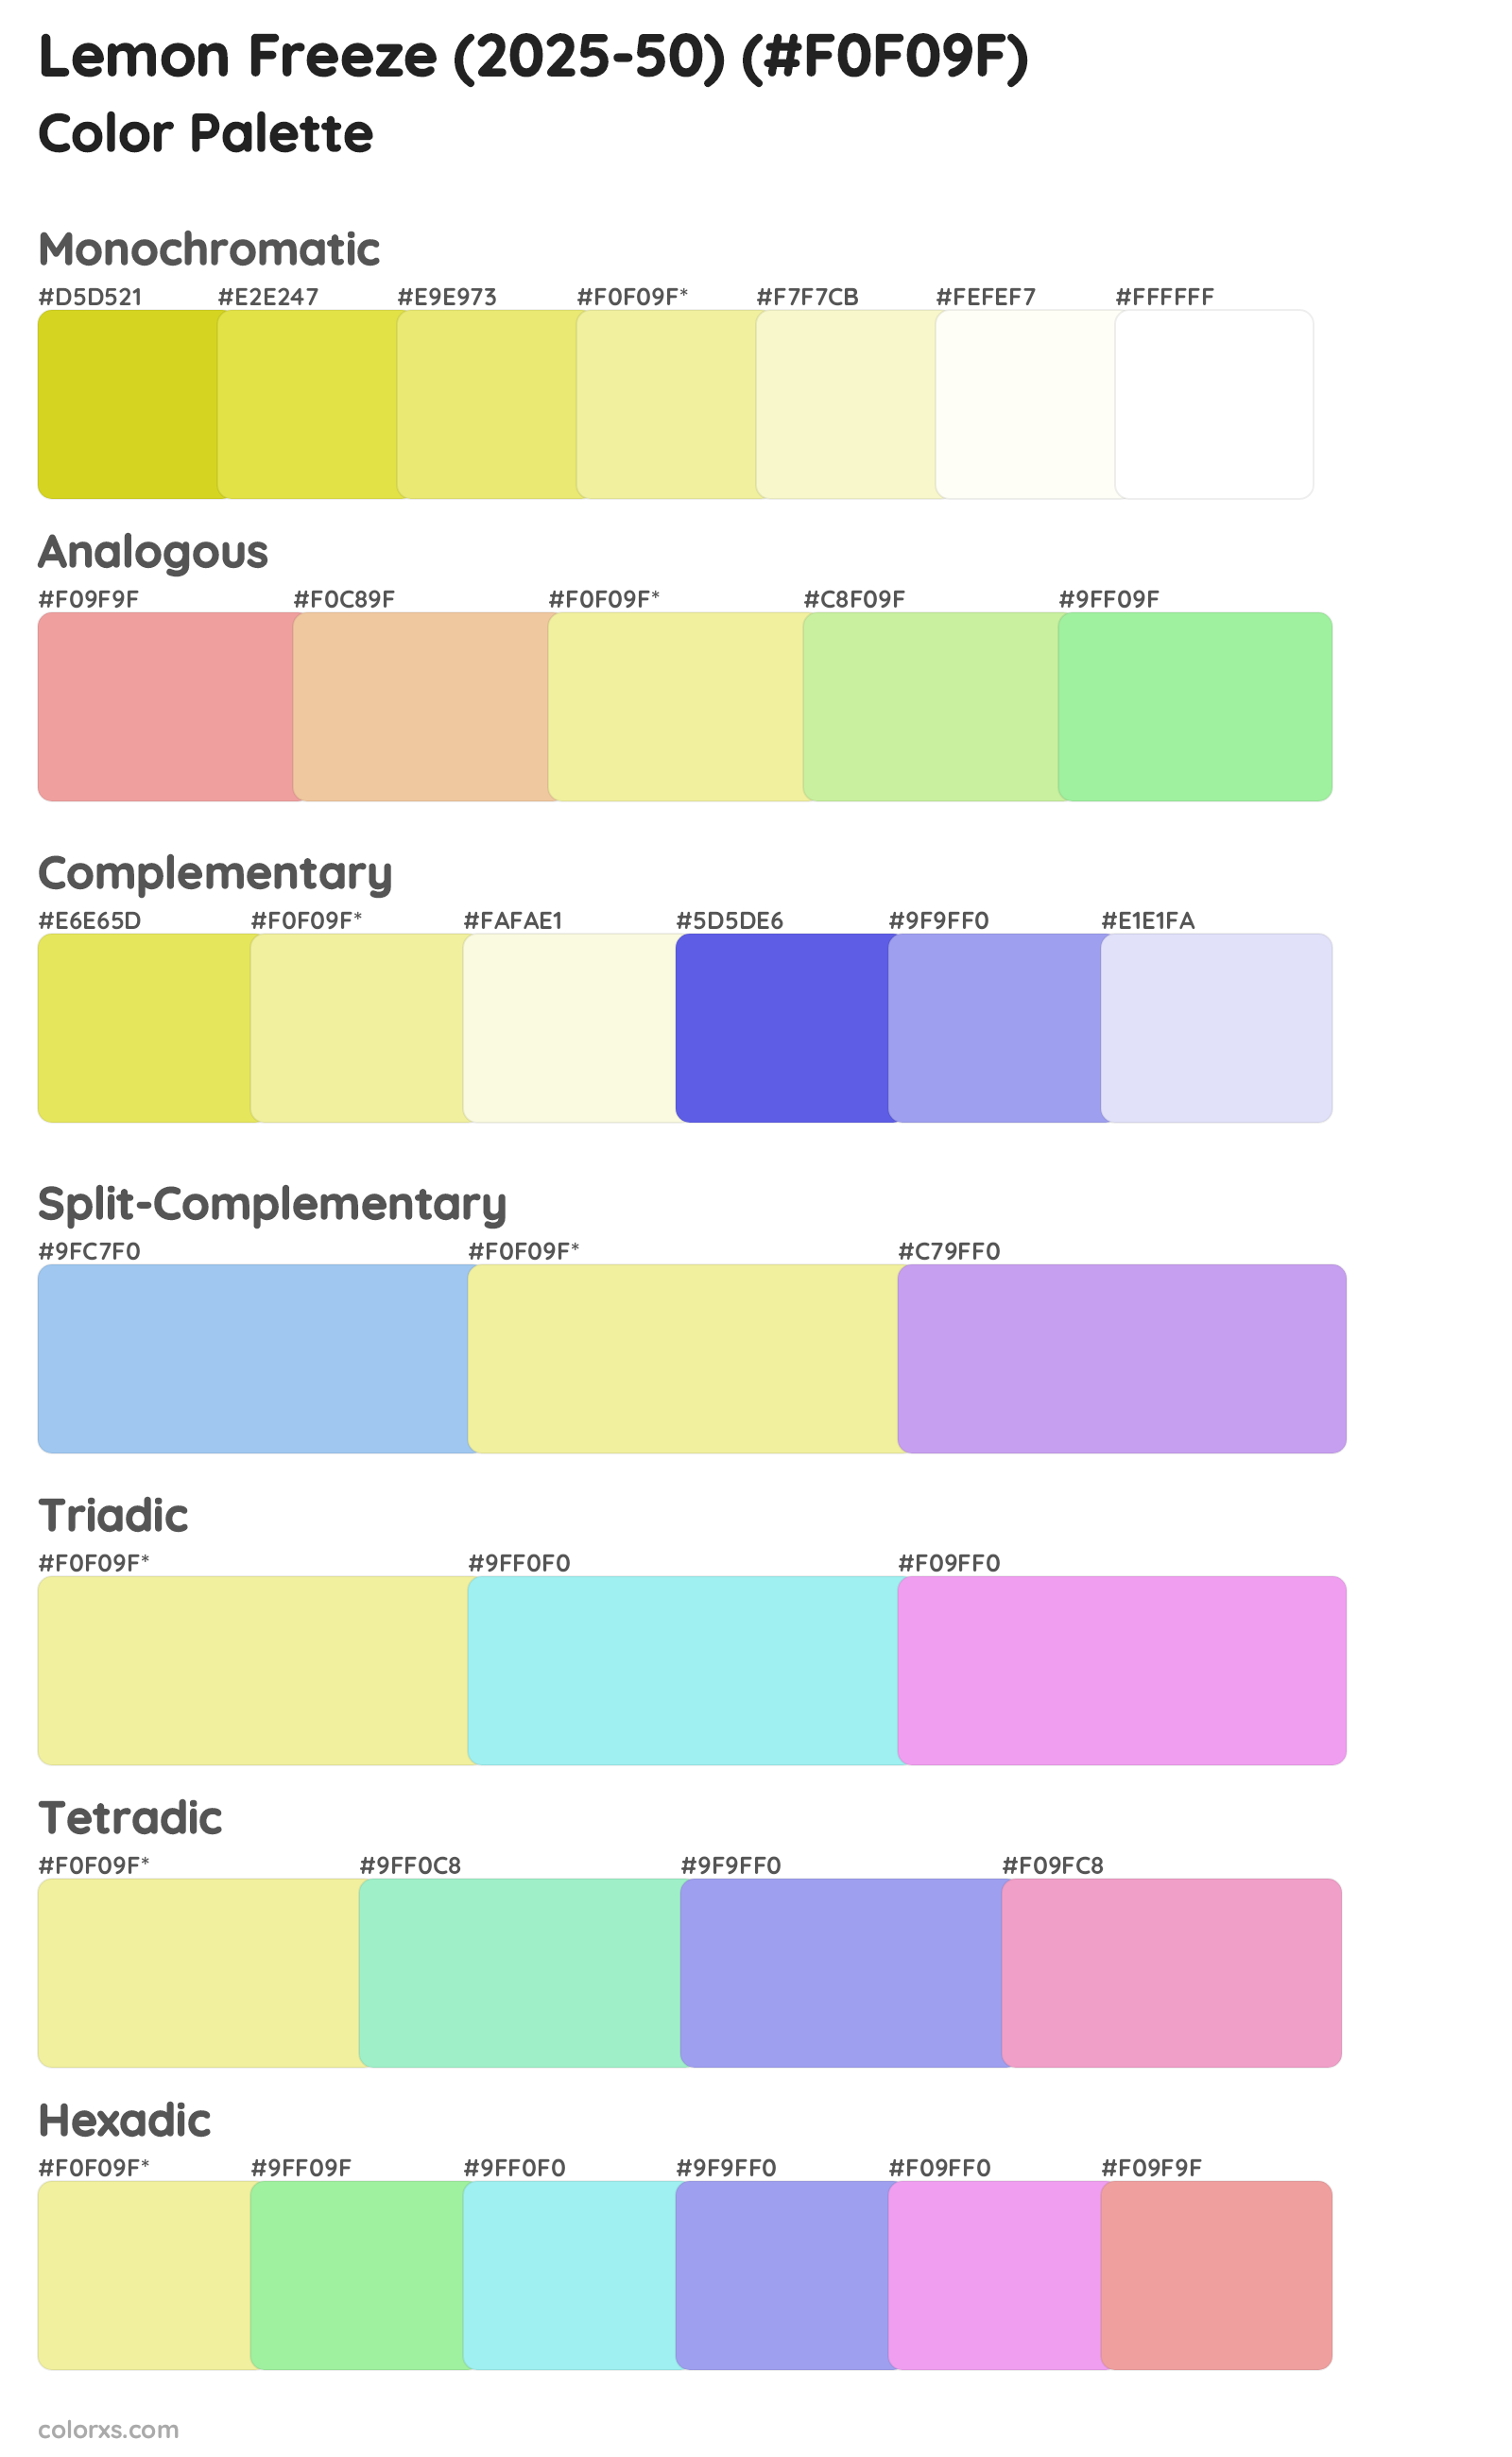 Lemon Freeze (2025-50) Color Scheme Palettes